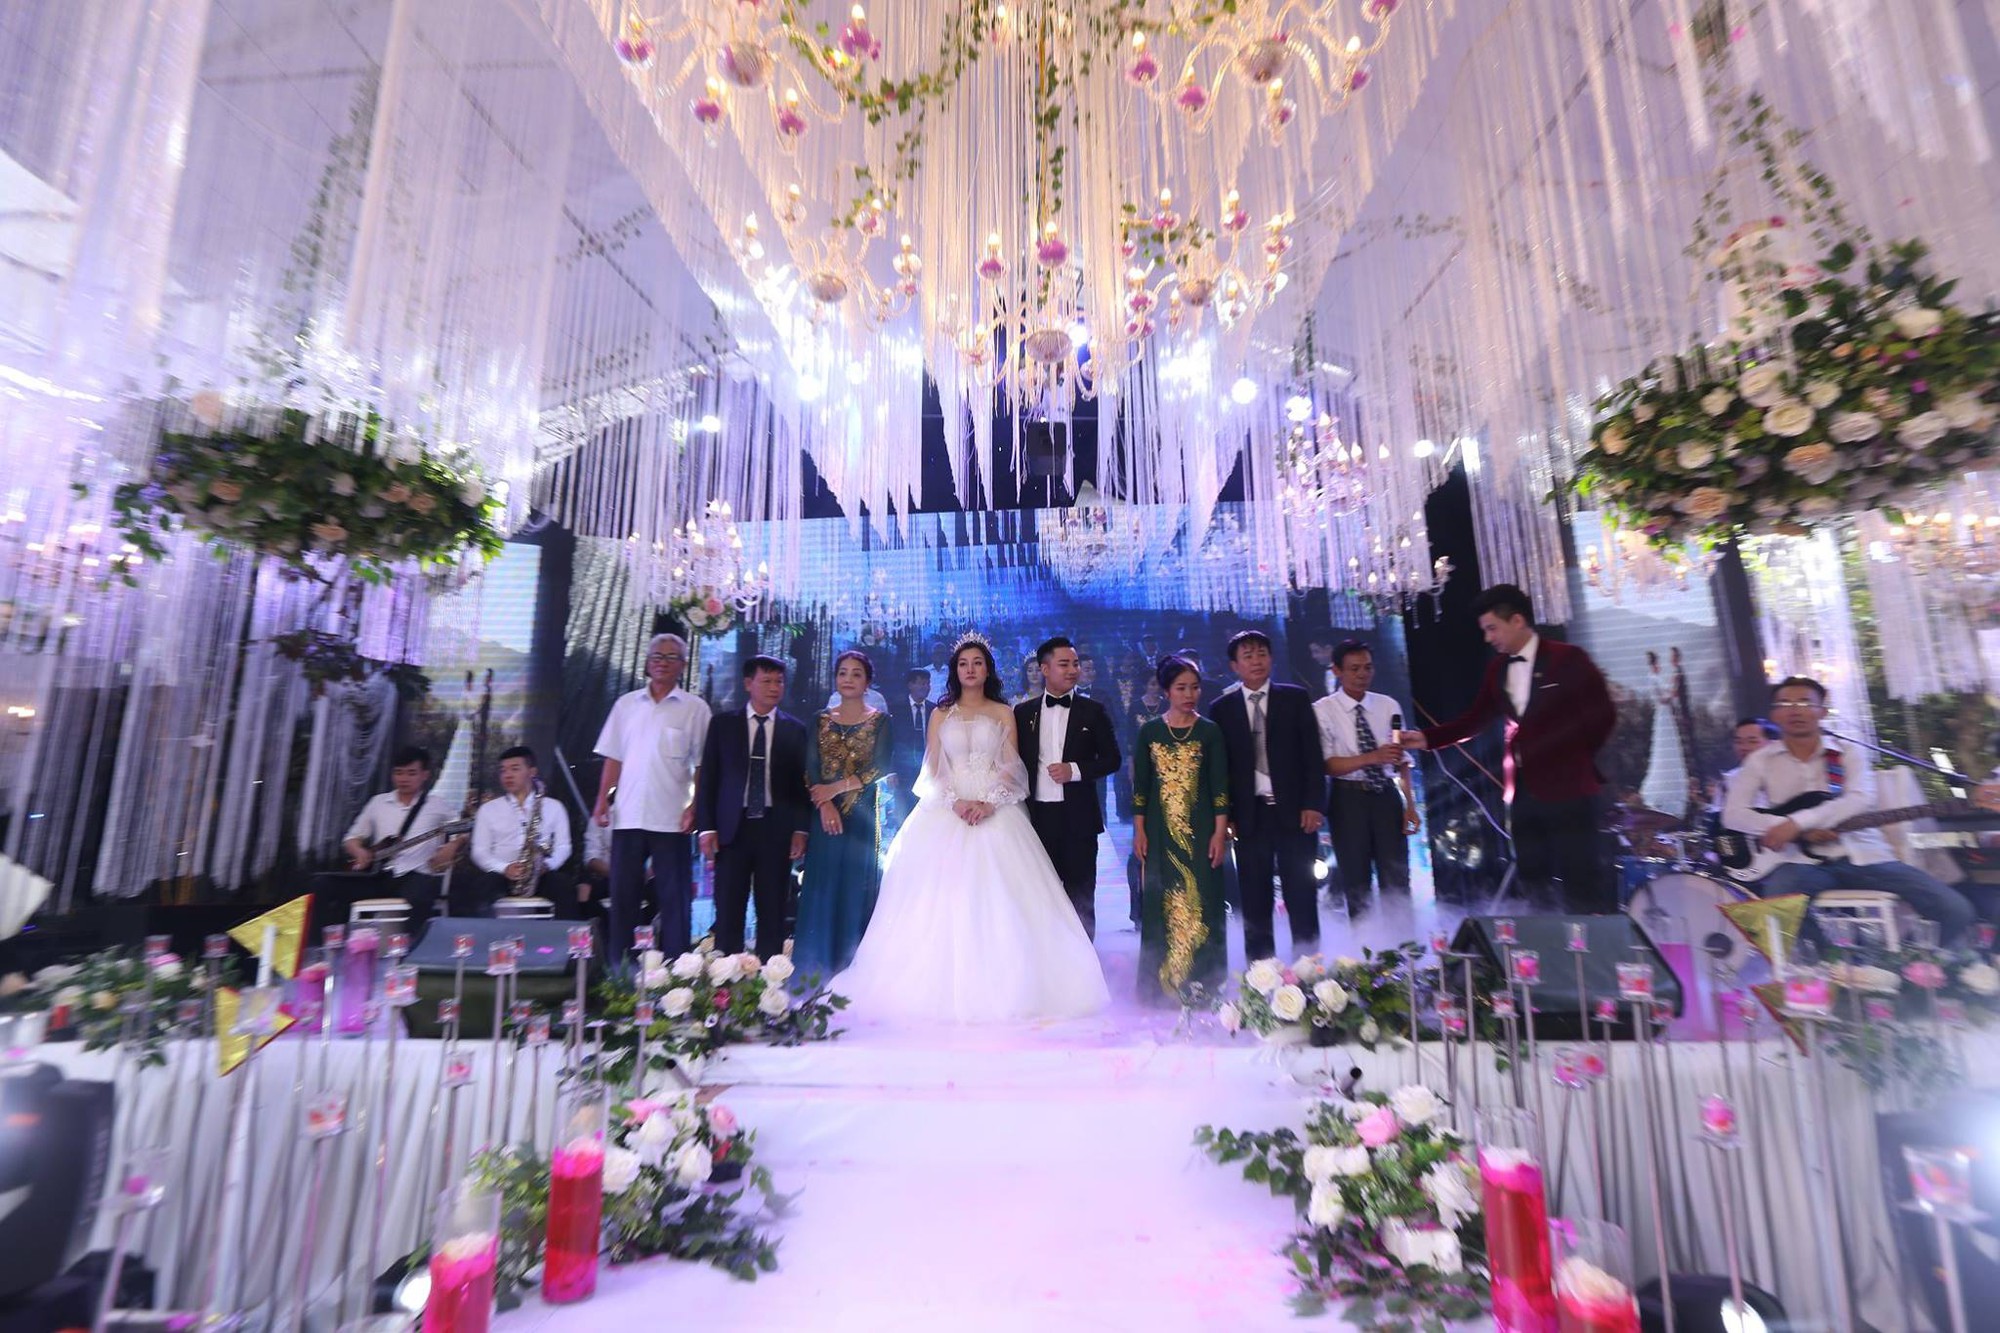 Hữu Công tiết lộ chi 2 tỷ cho đám cưới khủng mời Mr.Đàm, Lam Trường cùng 1.000 khách đến dự để nổi nhất làng - Ảnh 2.